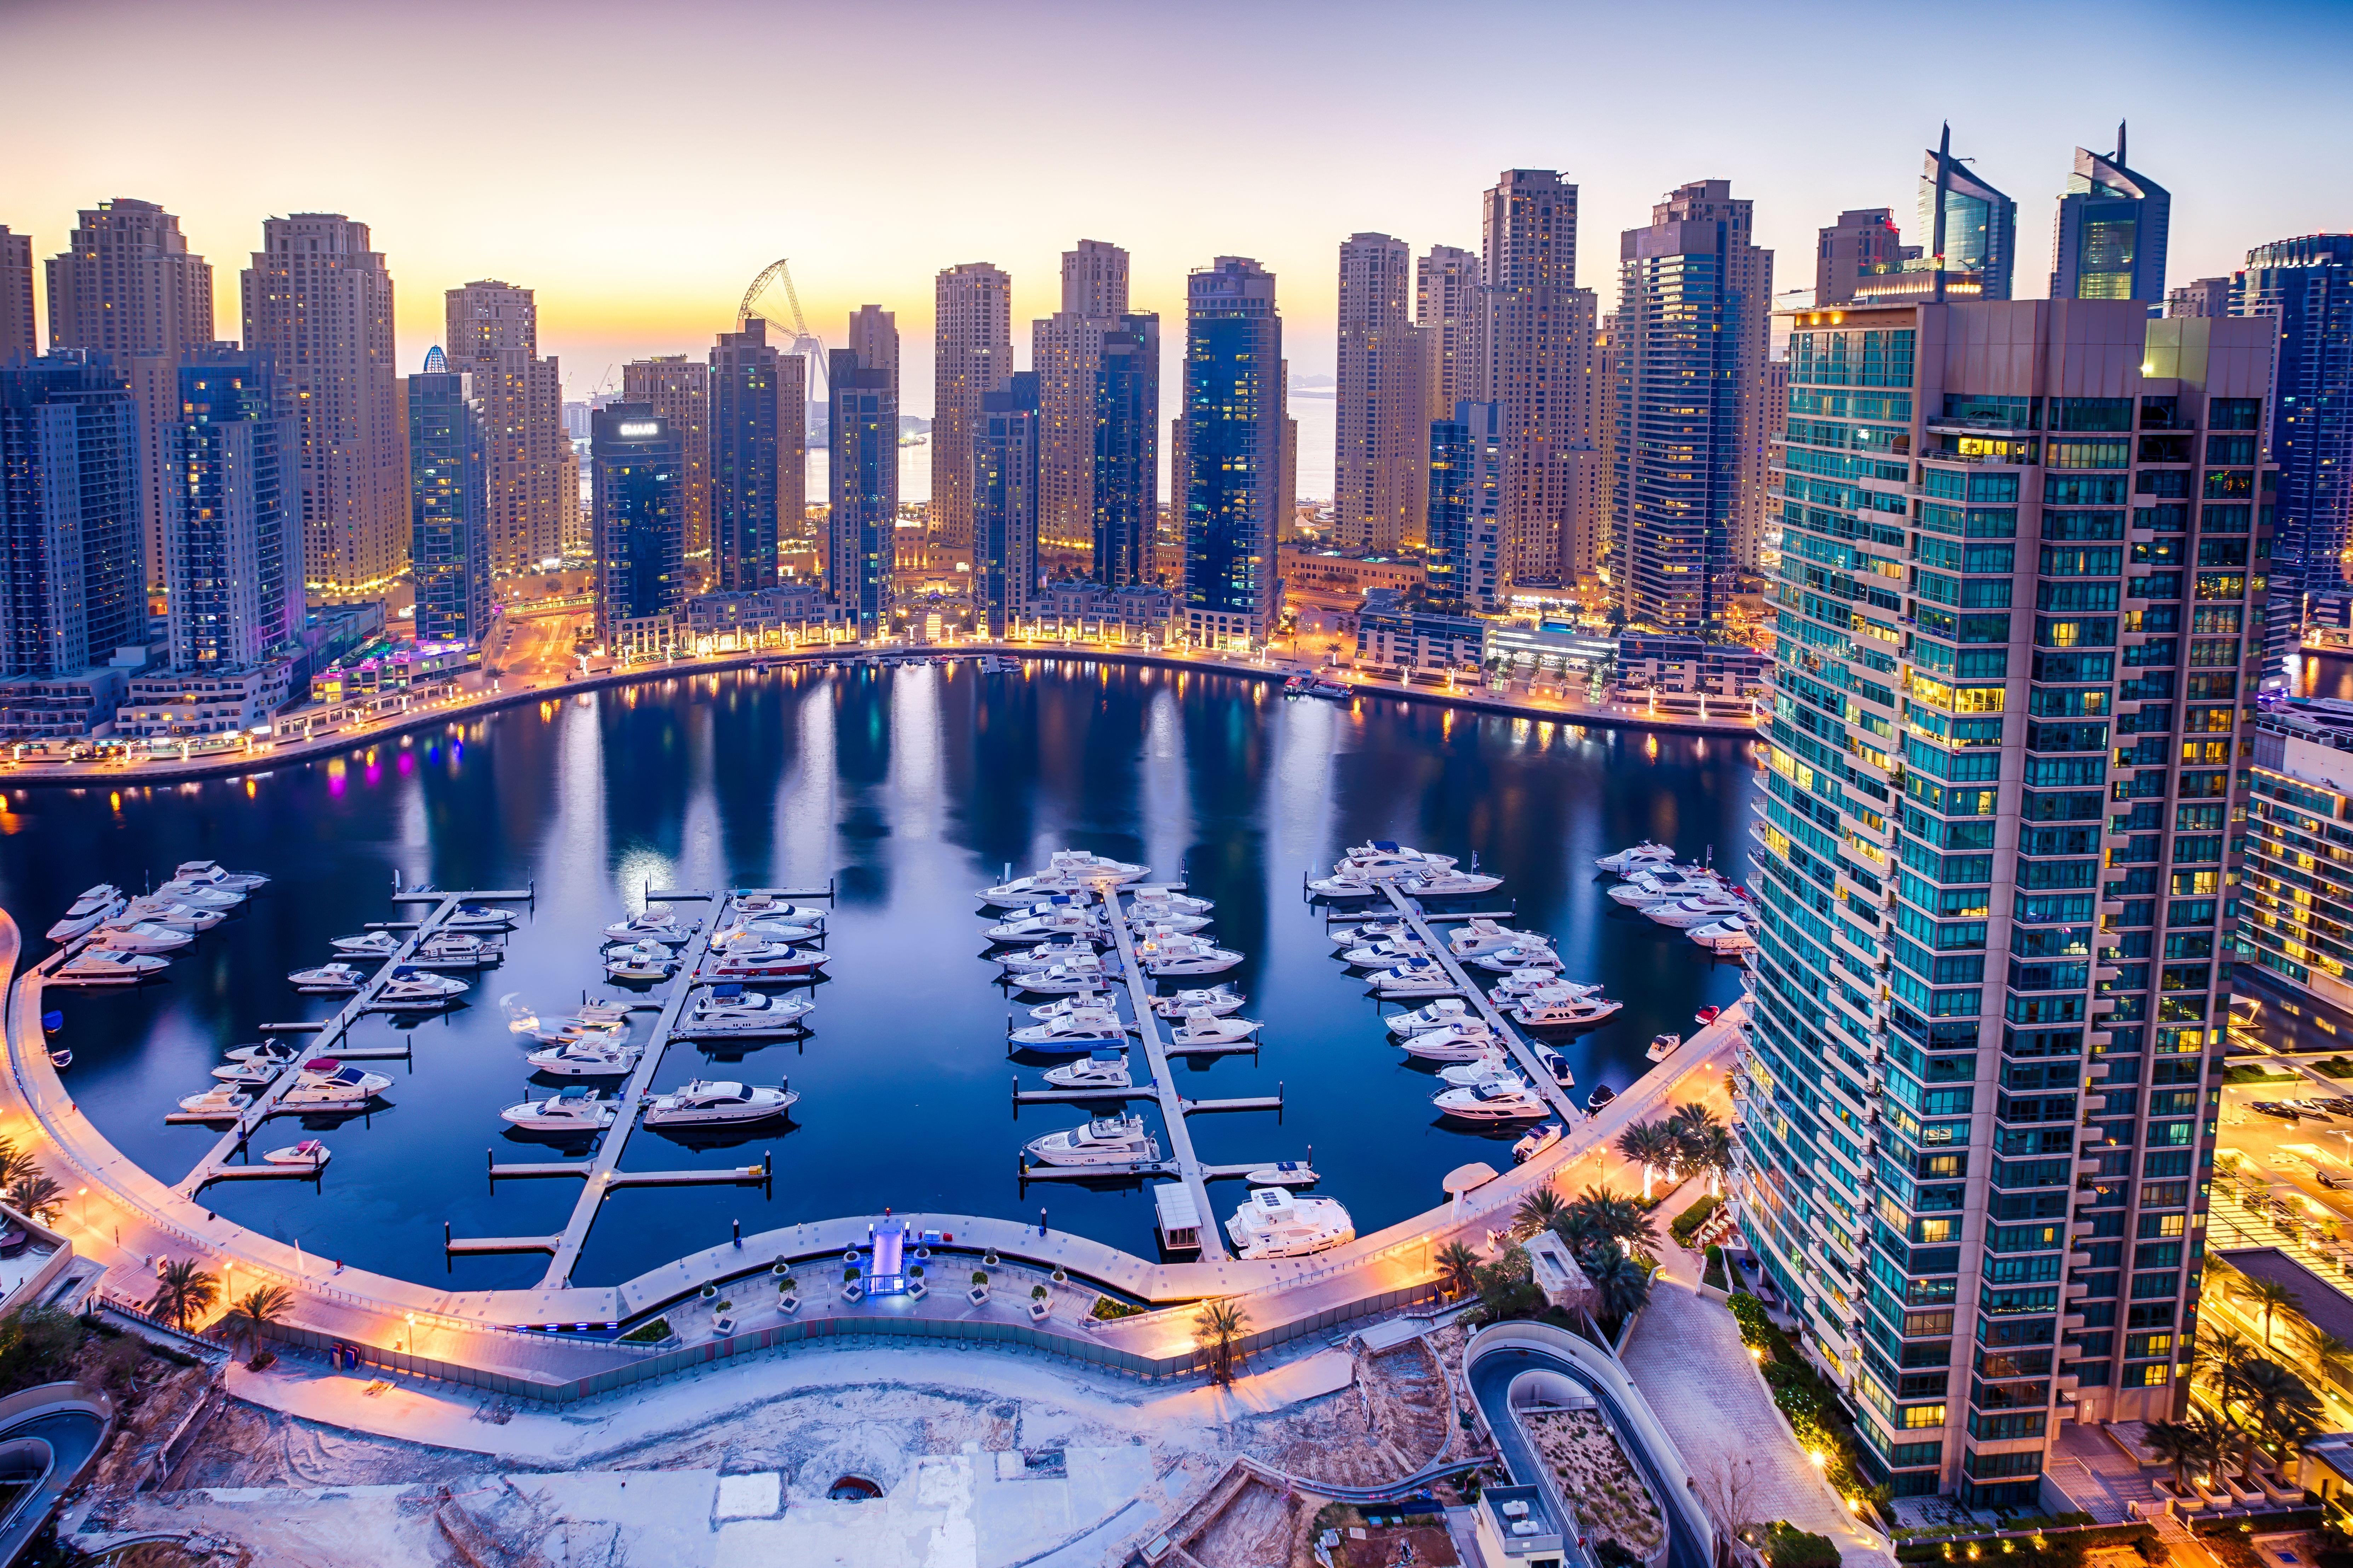 Glaring Dubai Marina